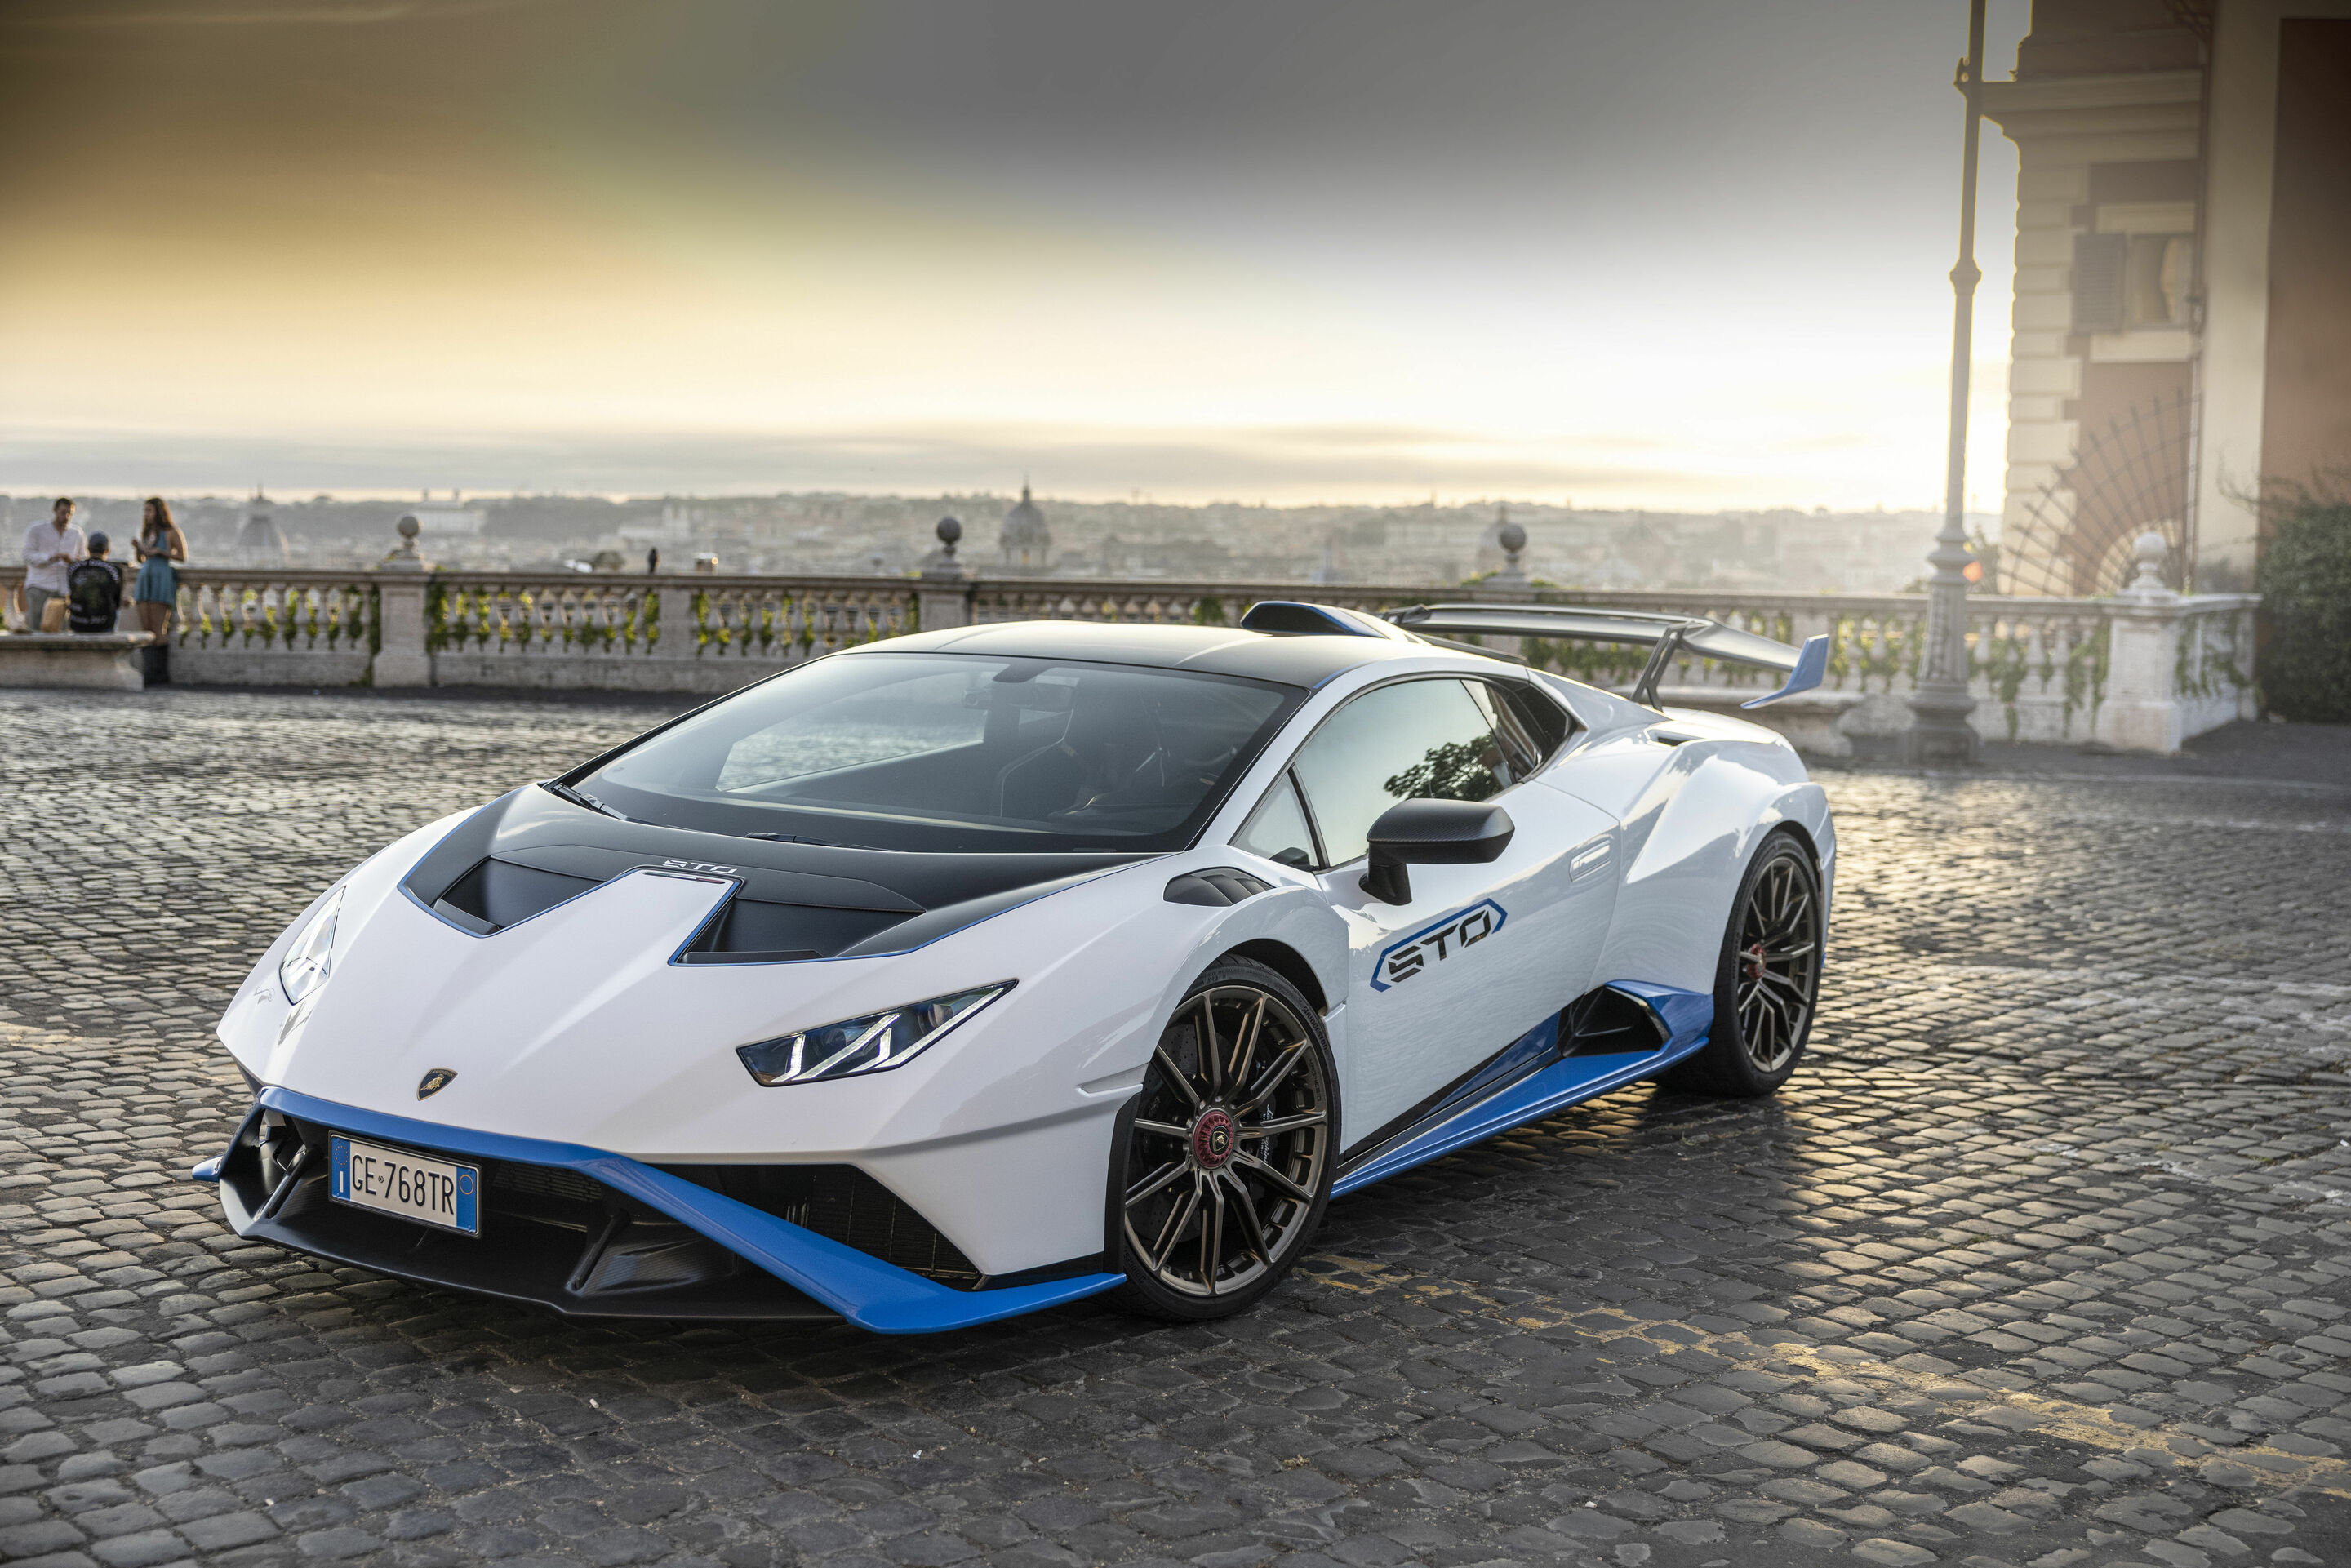 A record-breaking 2021 for Automobili Lamborghini